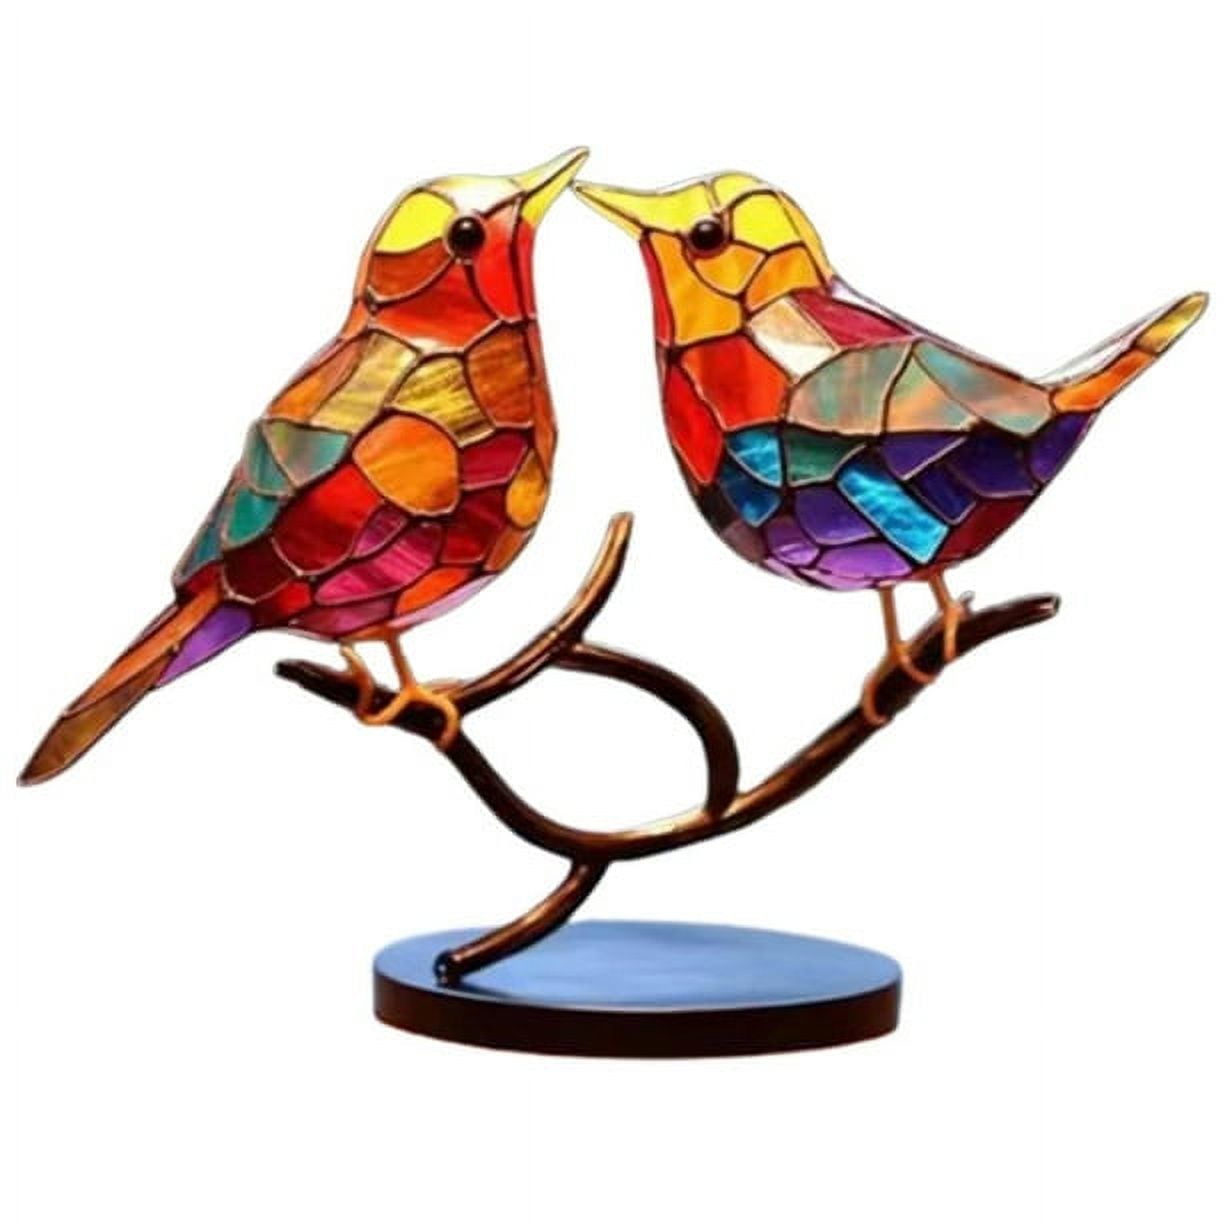  FENGWXINW Sculpture Character Decoration Sculpture Wire Bird  Metal Sculpture Bird Modern Art Gift Home Decoration : Home & Kitchen